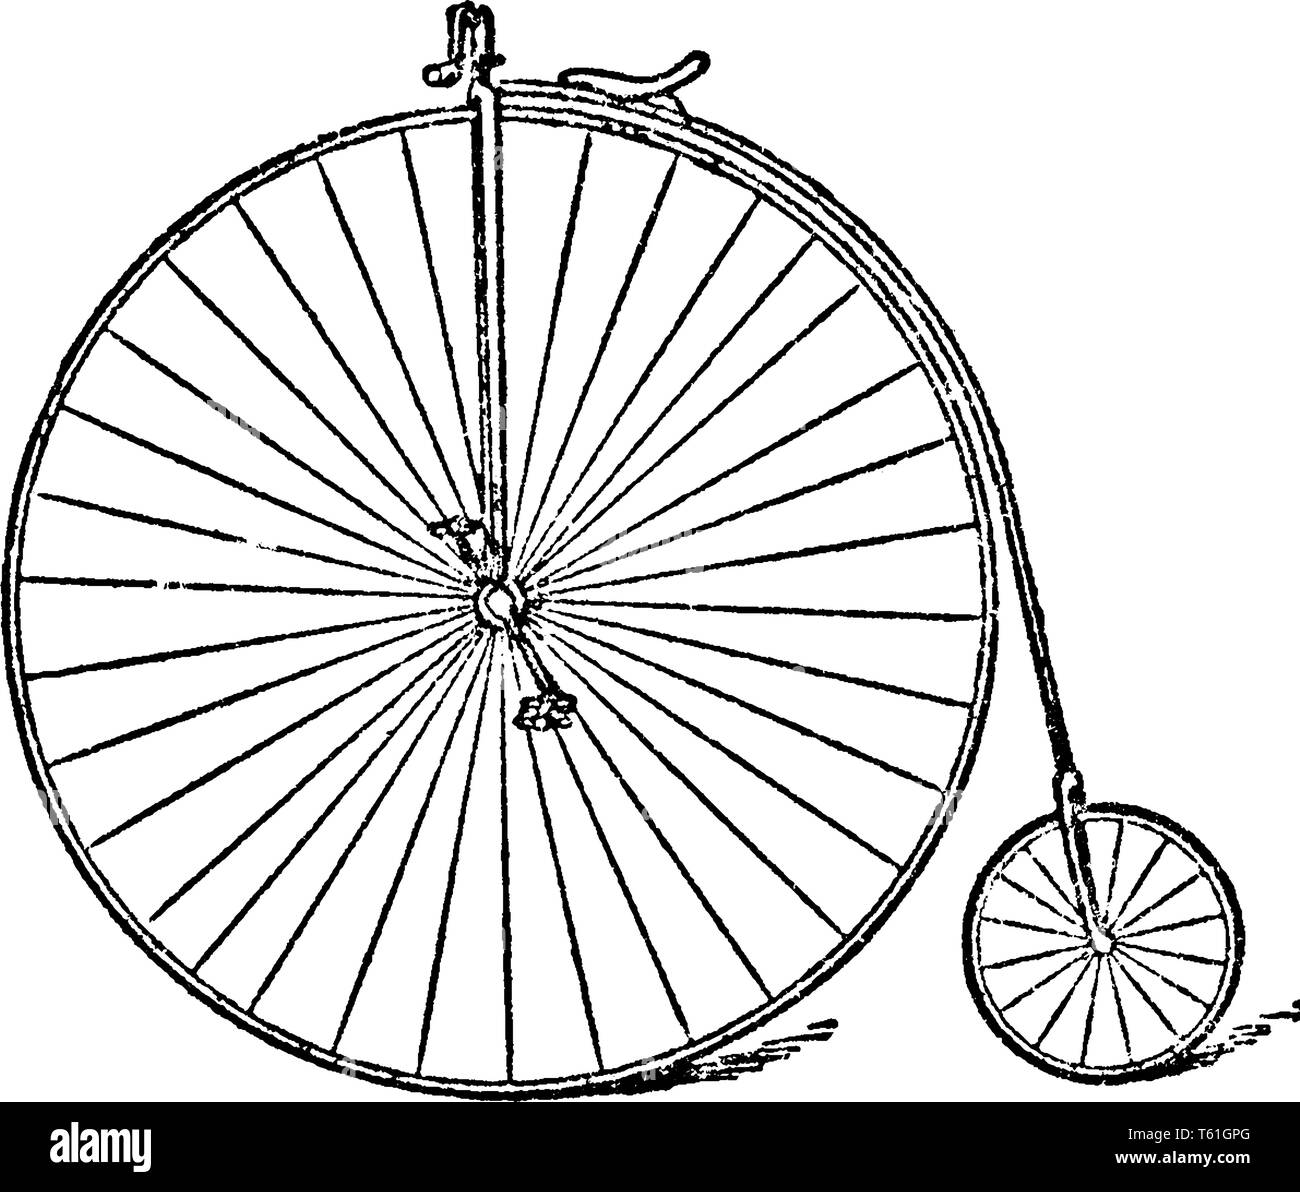 Rudge bicicletta da corsa motori sono stati cambiati a carter secco lubrificazione, vintage disegno della linea di incisione o illustrazione. Illustrazione Vettoriale